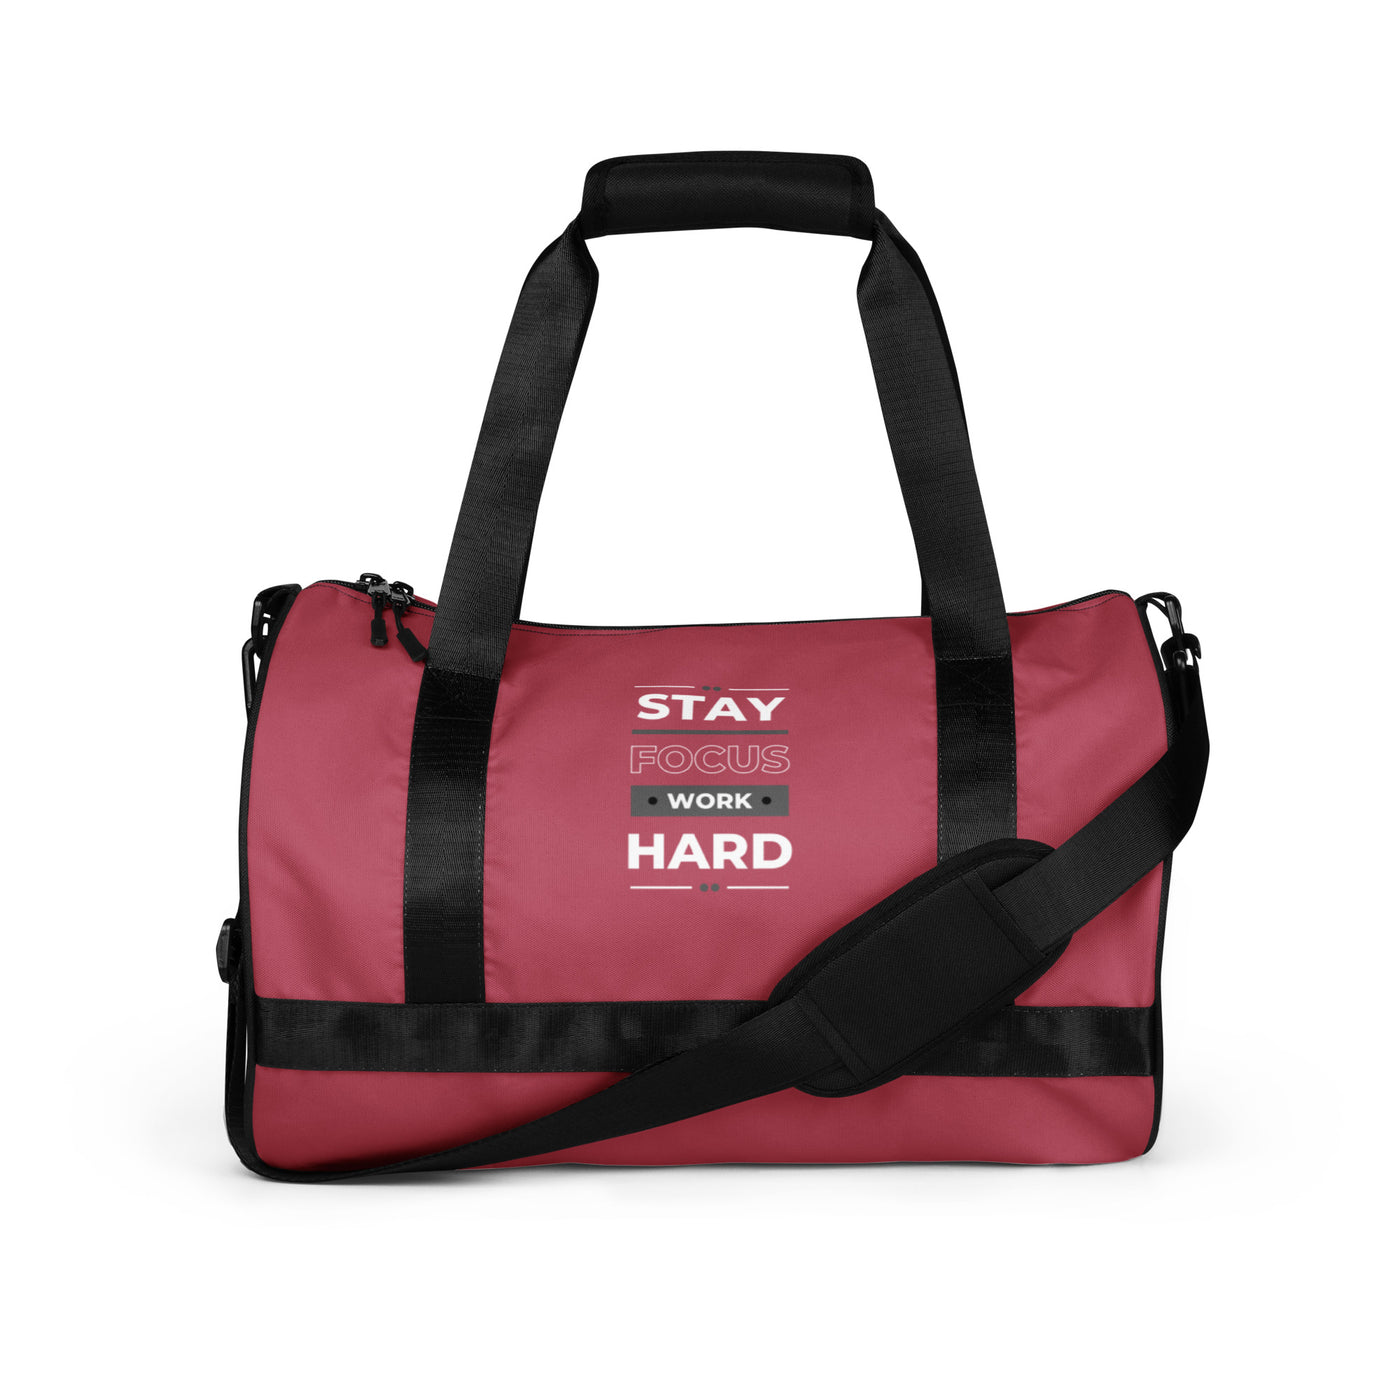 Hippie Pink Gym Bag - Stay Focus Work Hard